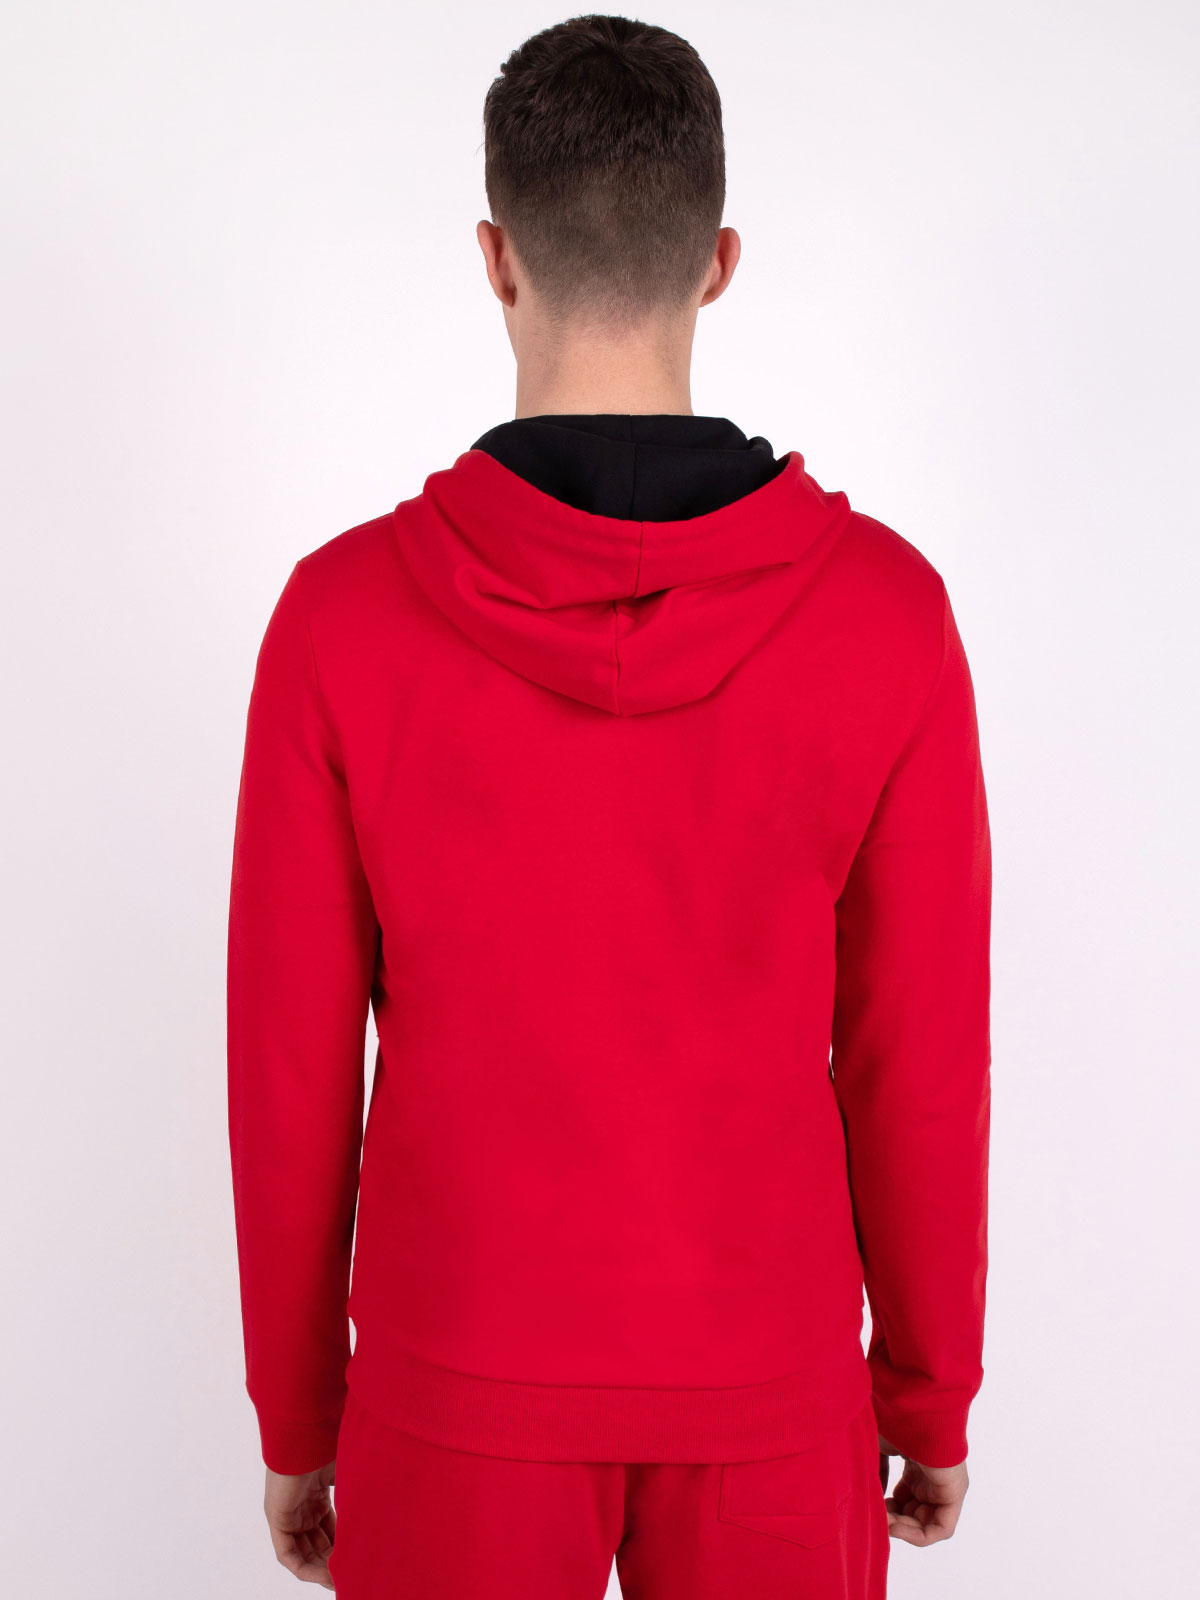 Αθλητικό φούτερ σε κόκκινο χρώμα με κου - 28090 € 27.56 img4